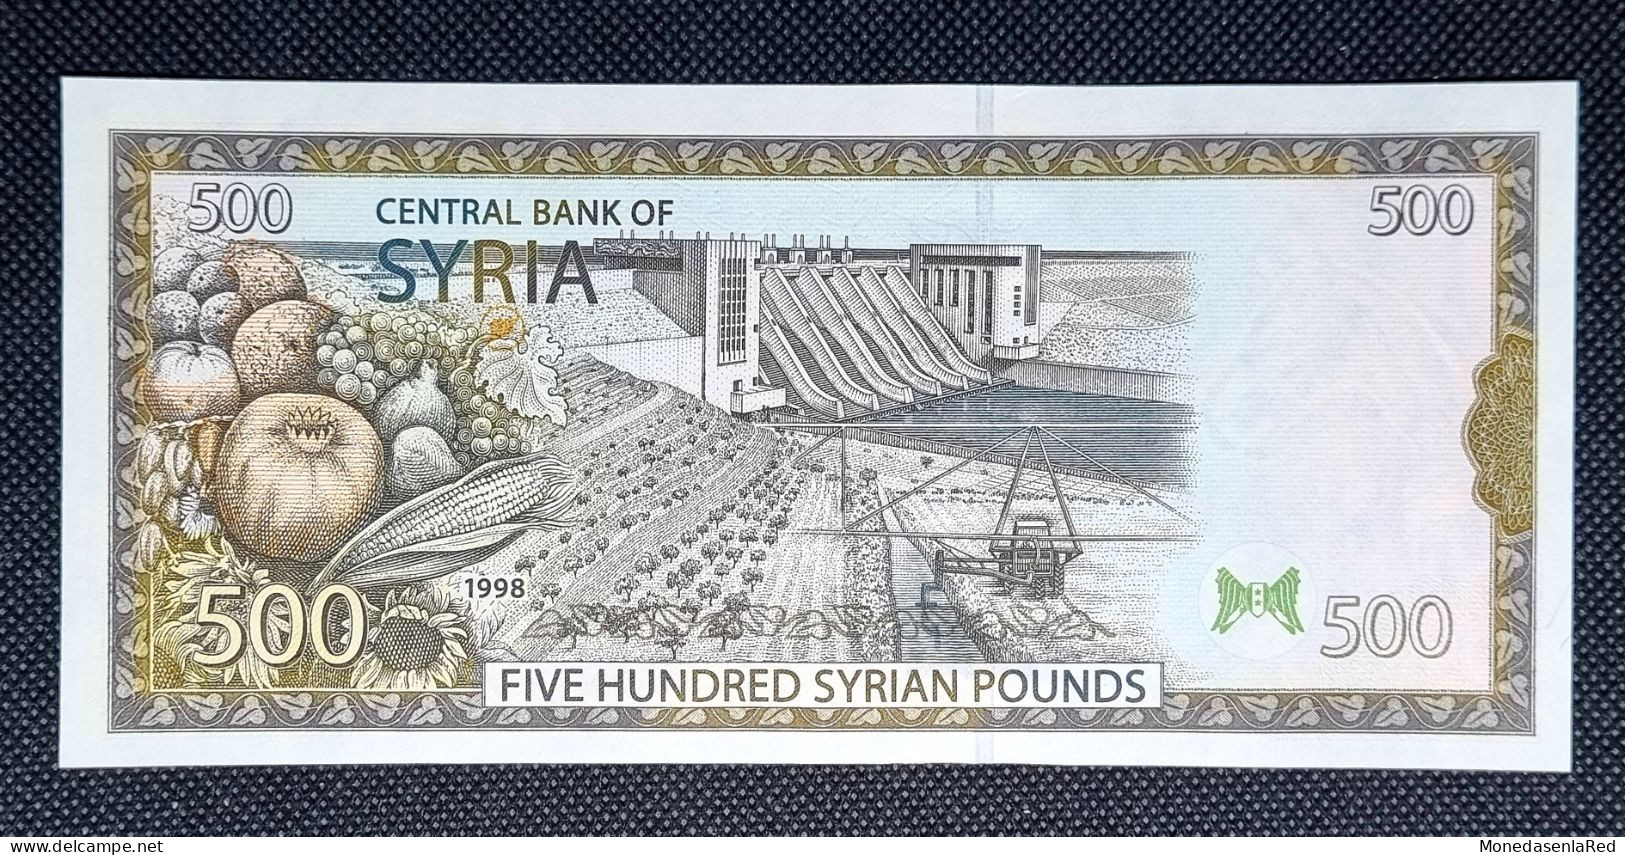 SIRIA / SYRIA 500 LIBRAS/ POUNDS 1998 SC / UNC. P-110c - Syria